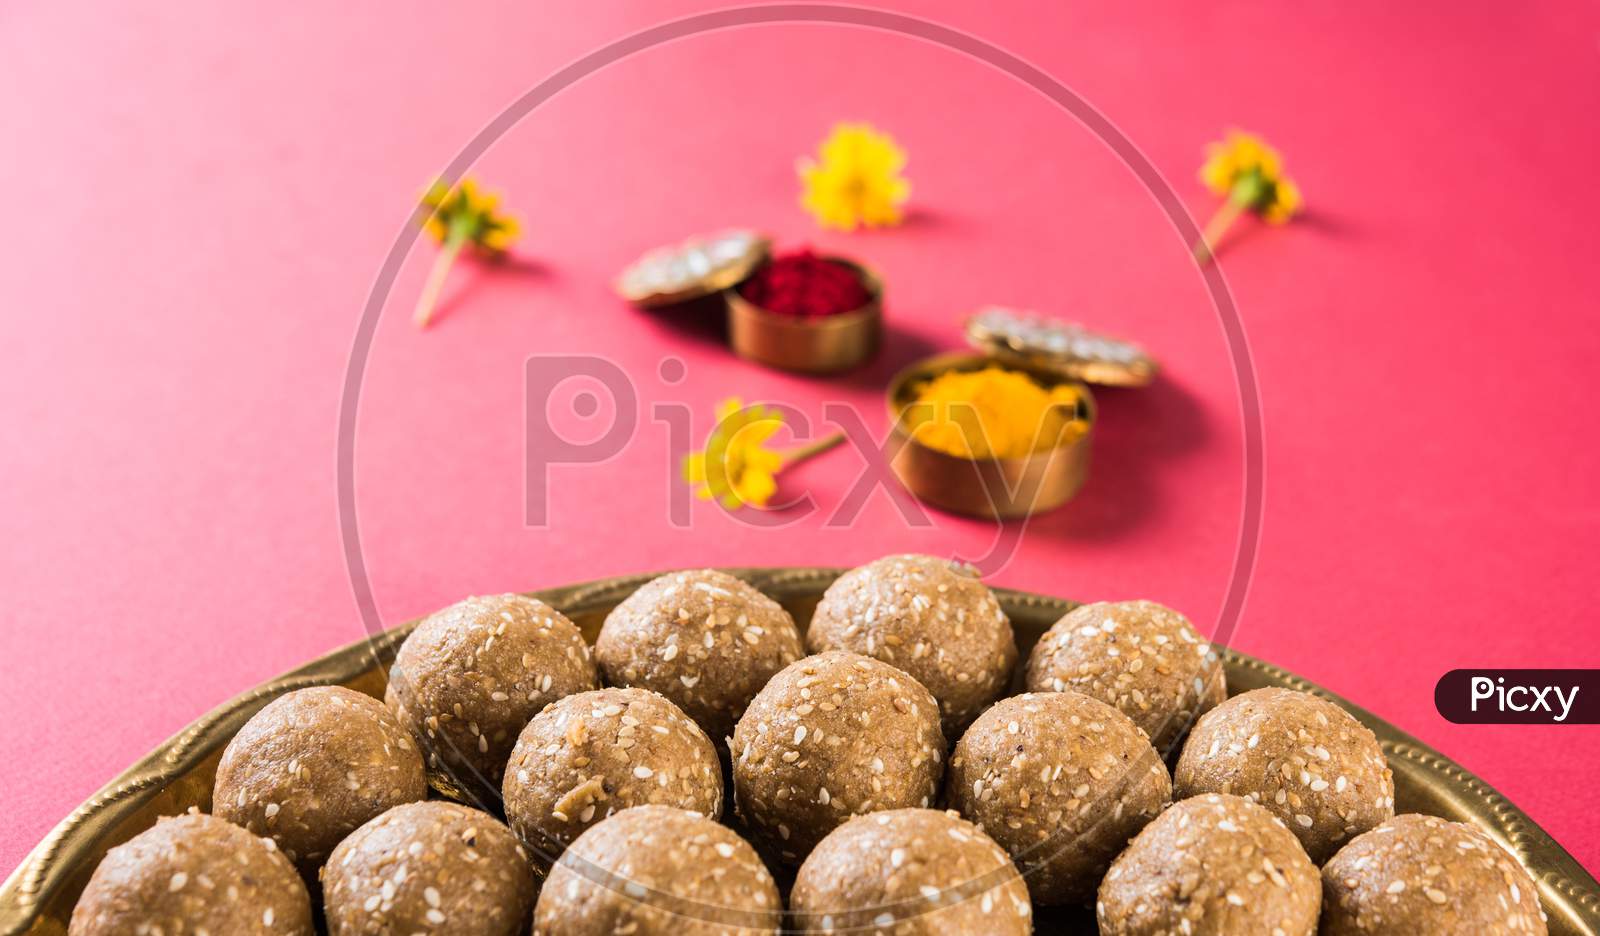 Tilgul / Til Gul laddu OR Sesame sweet ball and cake or Vadi